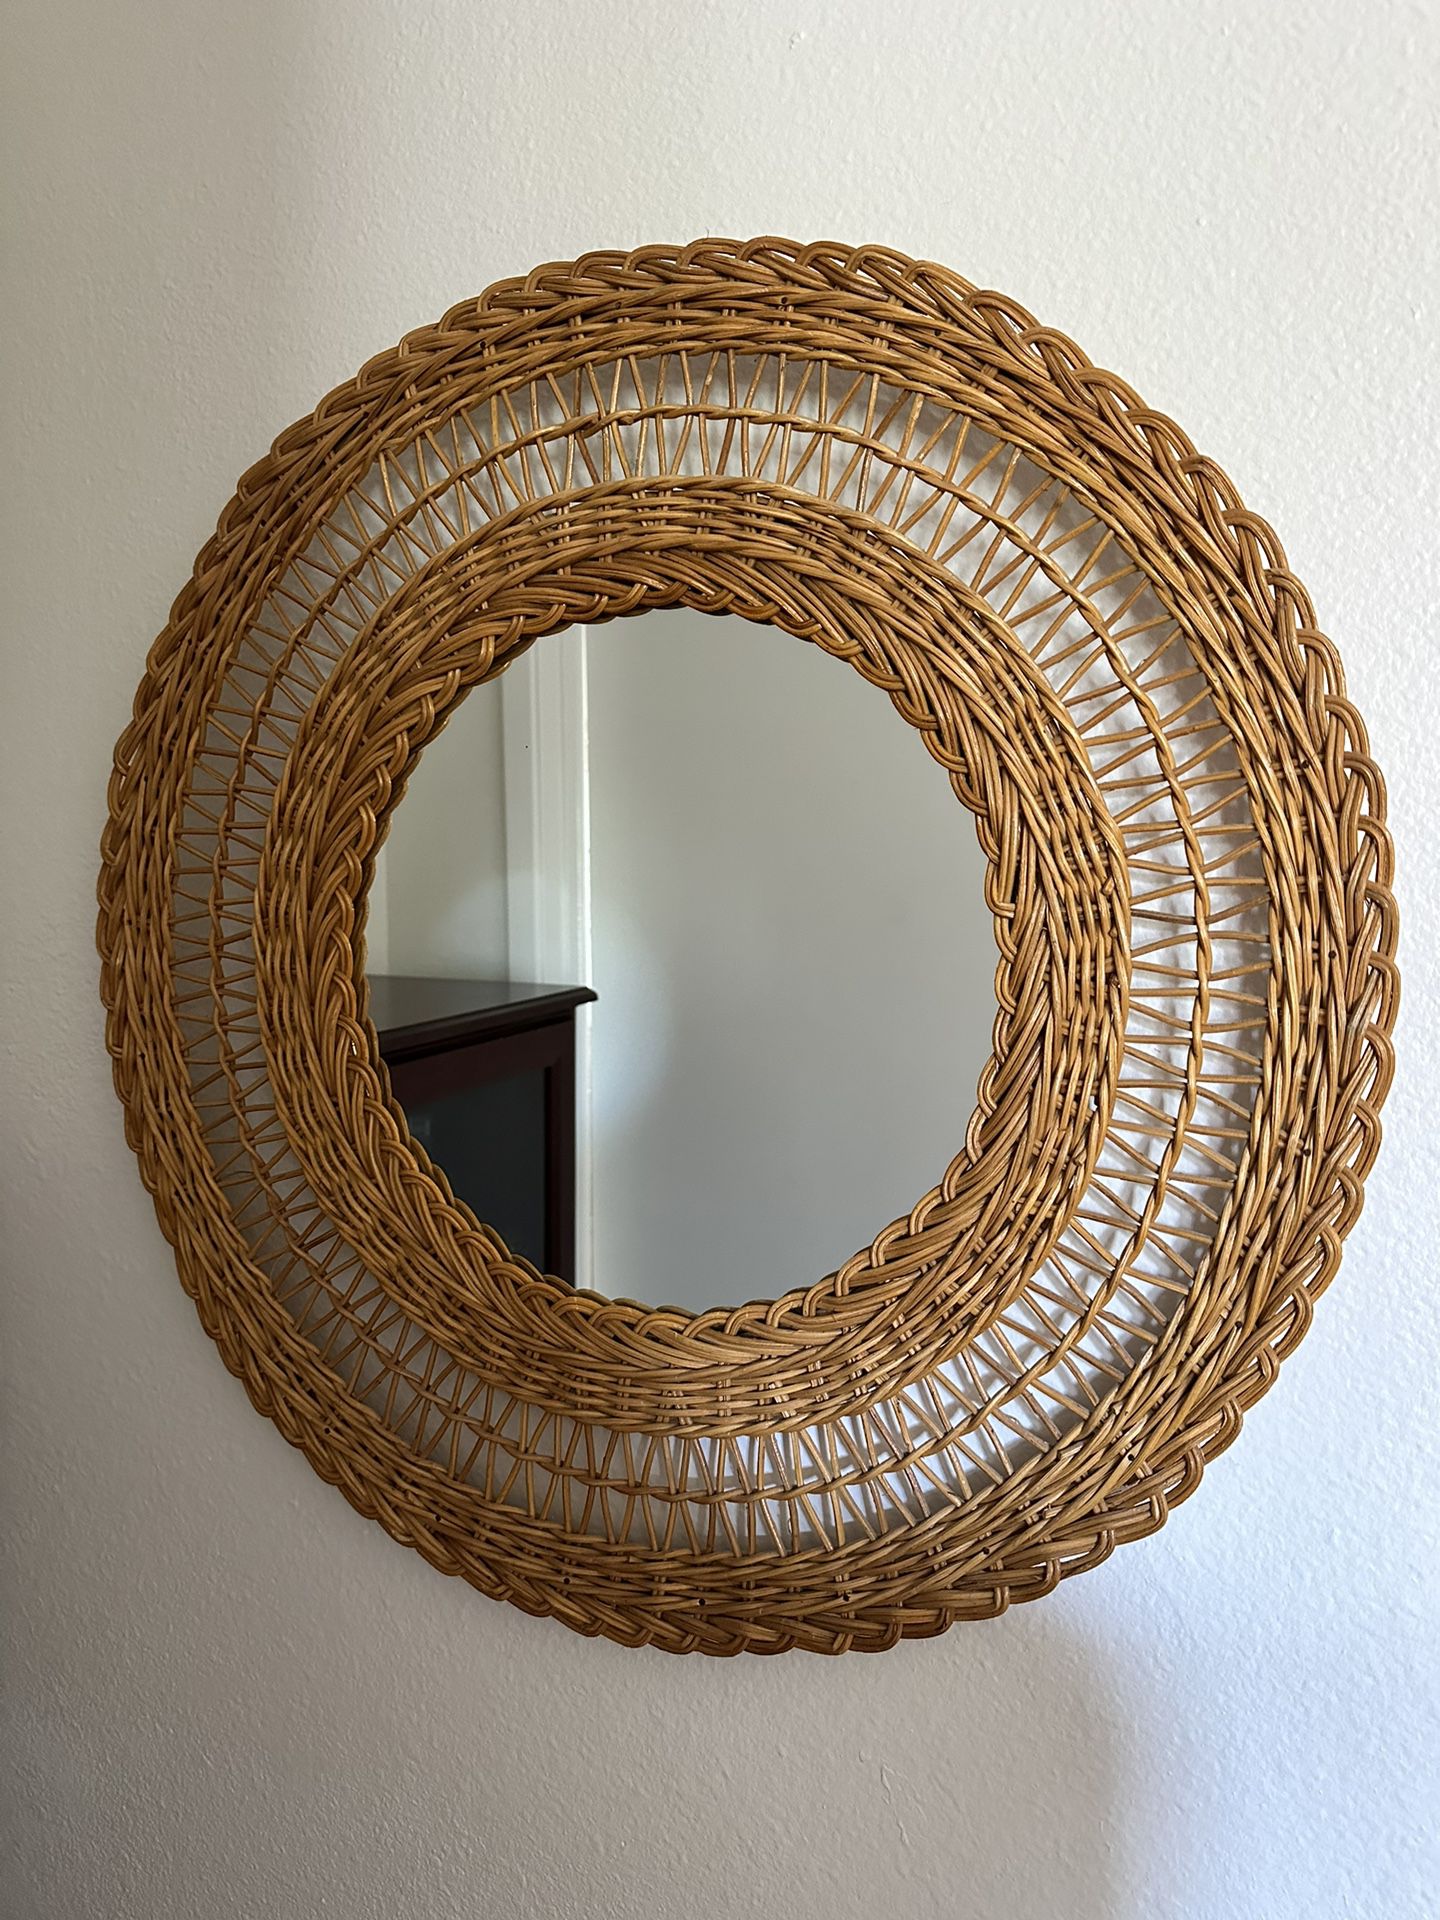 24” Wicker Circular Mirror